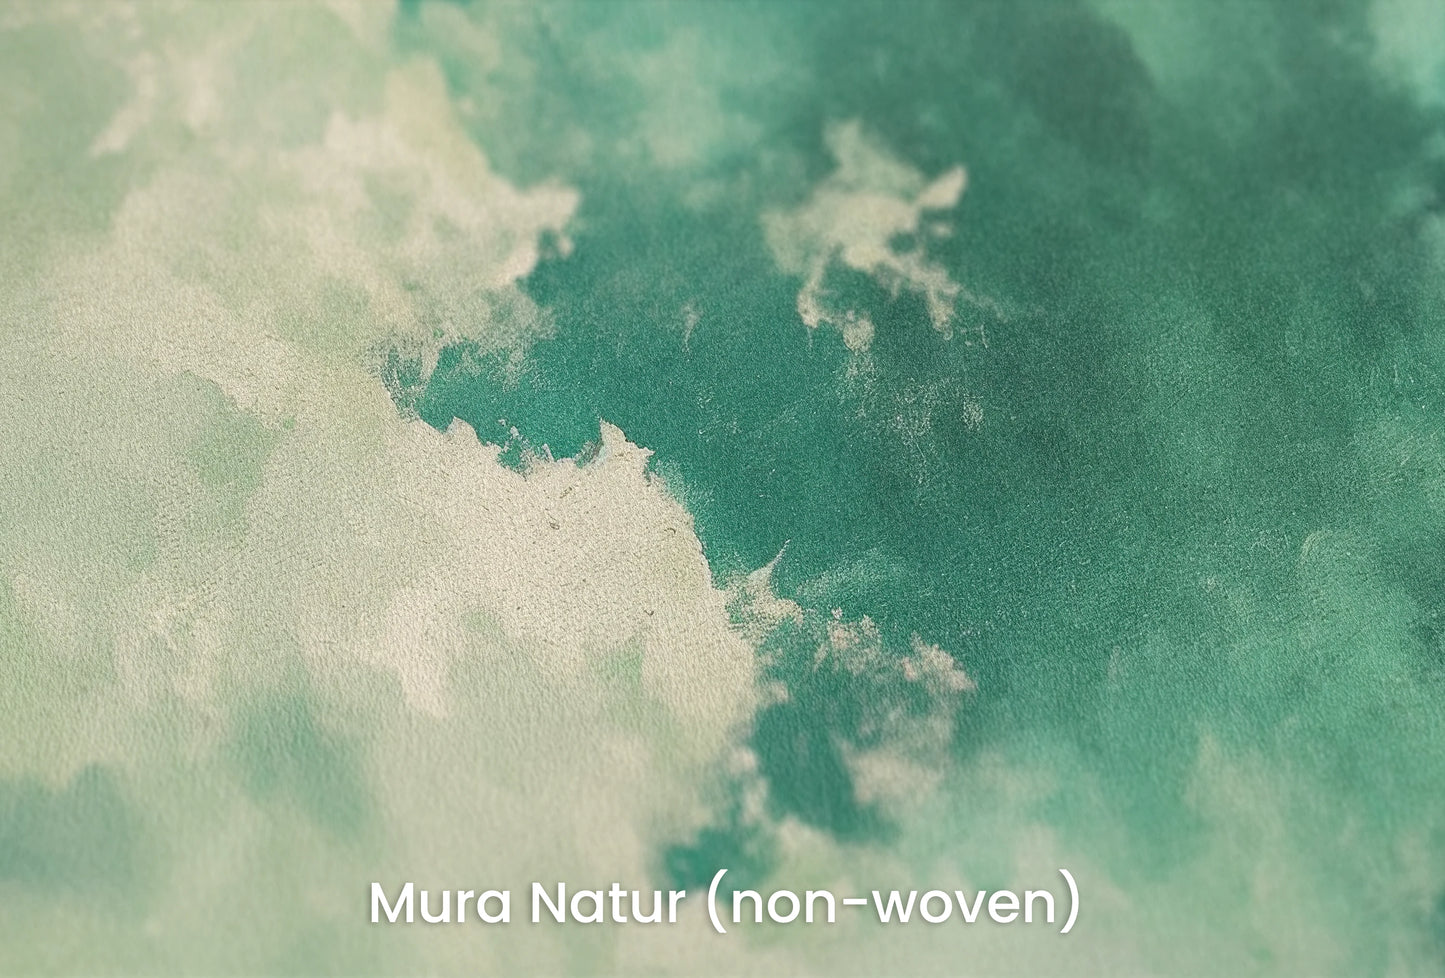 Zbliżenie na artystyczną fototapetę o nazwie Verdant Whisper #2 na podłożu Mura Natur (non-woven) - naturalne i ekologiczne podłoże.